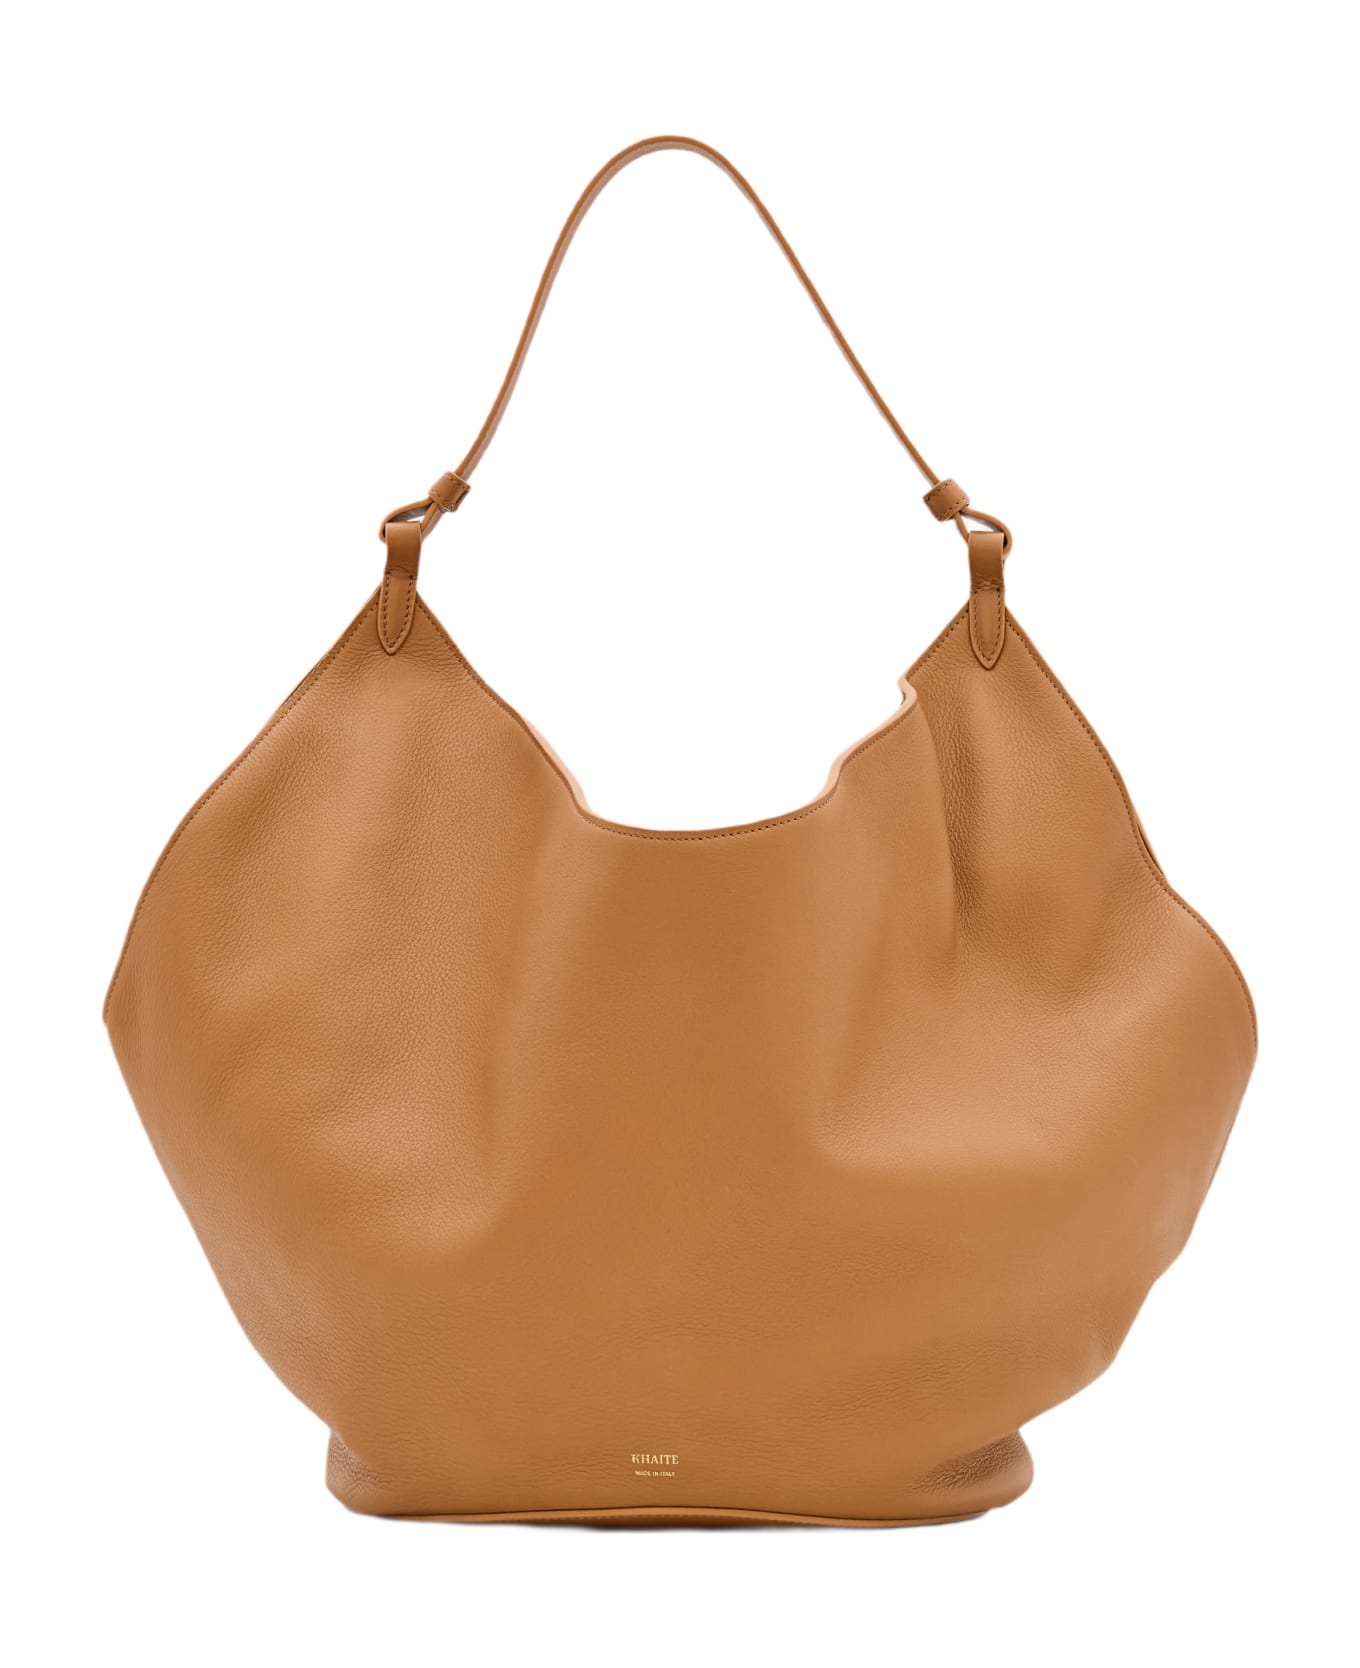 Khaite Medium Lotus Leather Bag - Beige